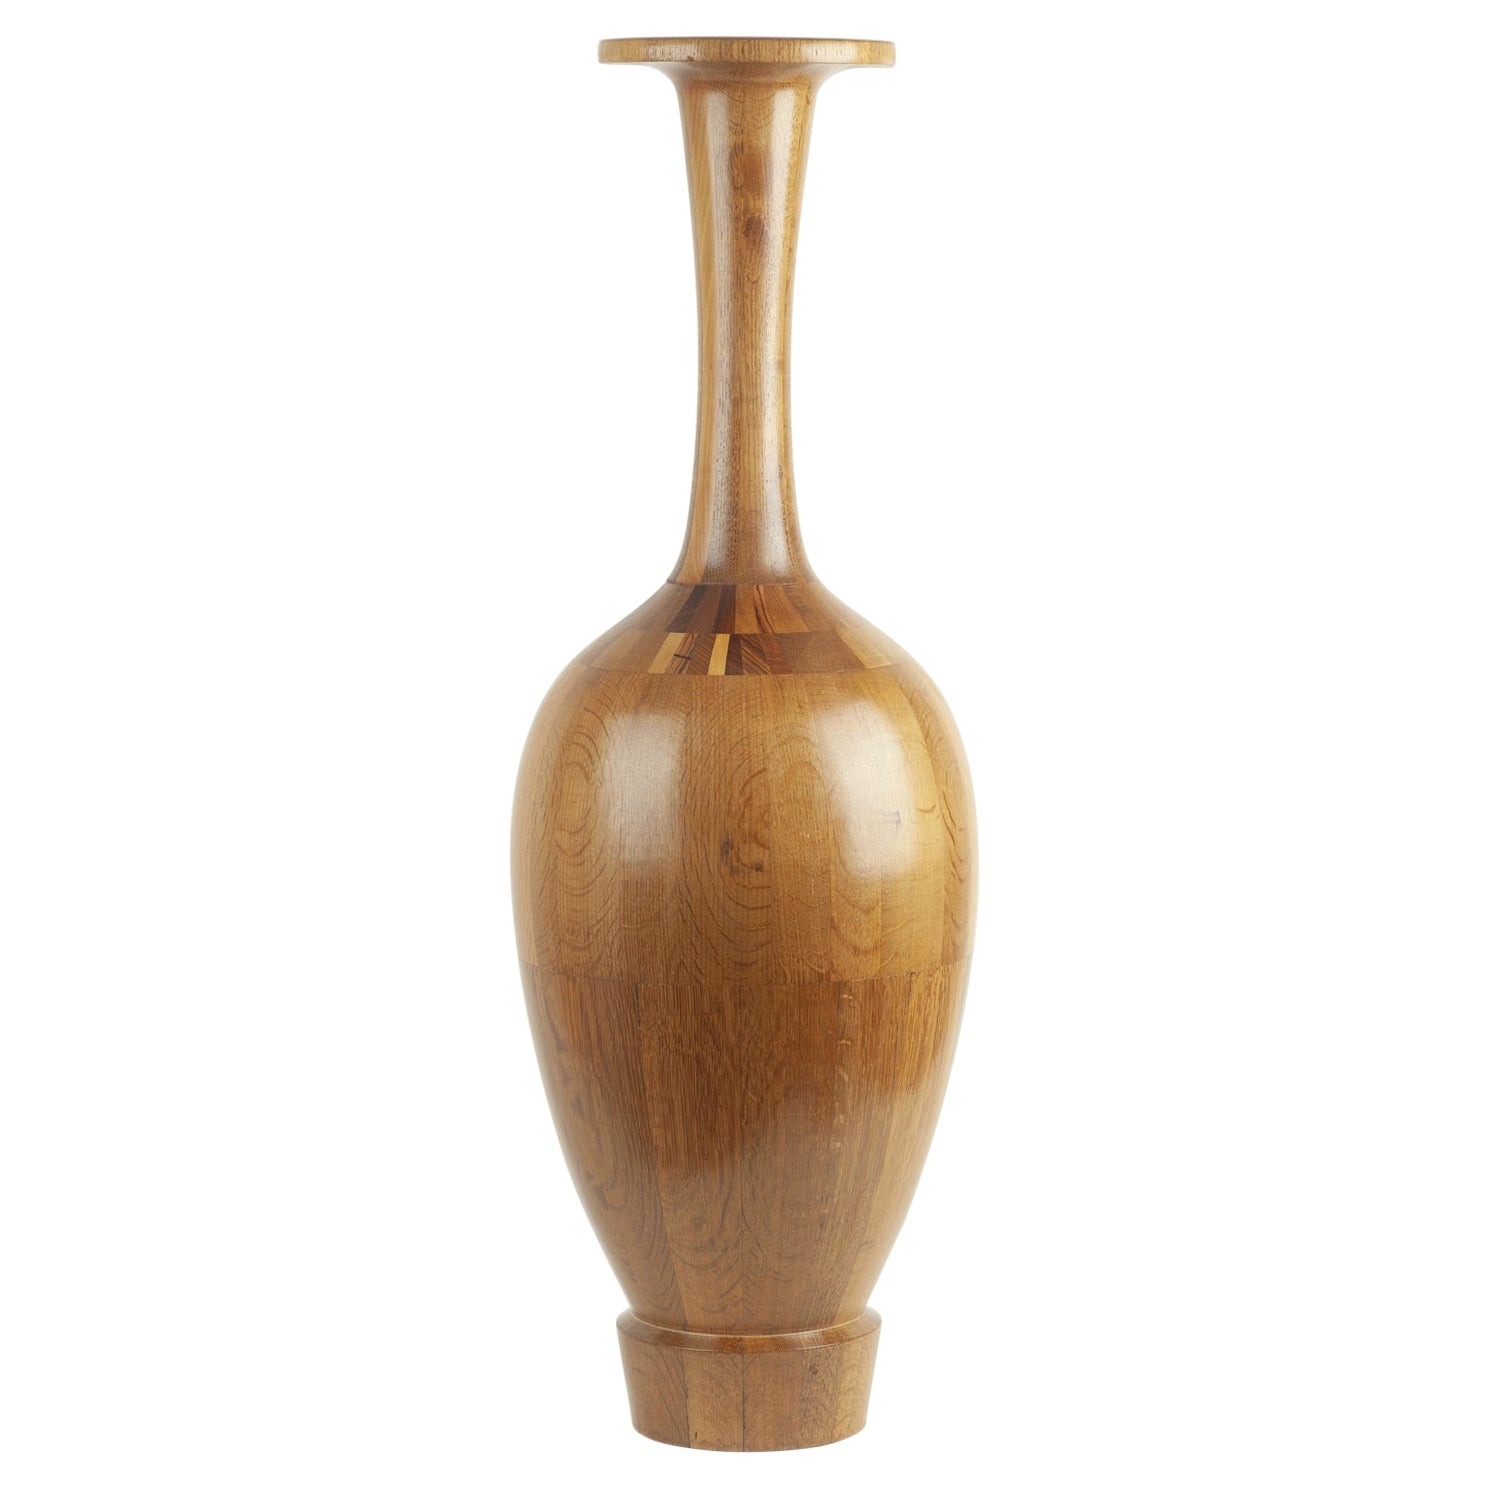 Große Vase aus Holz von Maurice Bonami, De Coene Frres zugeschrieben